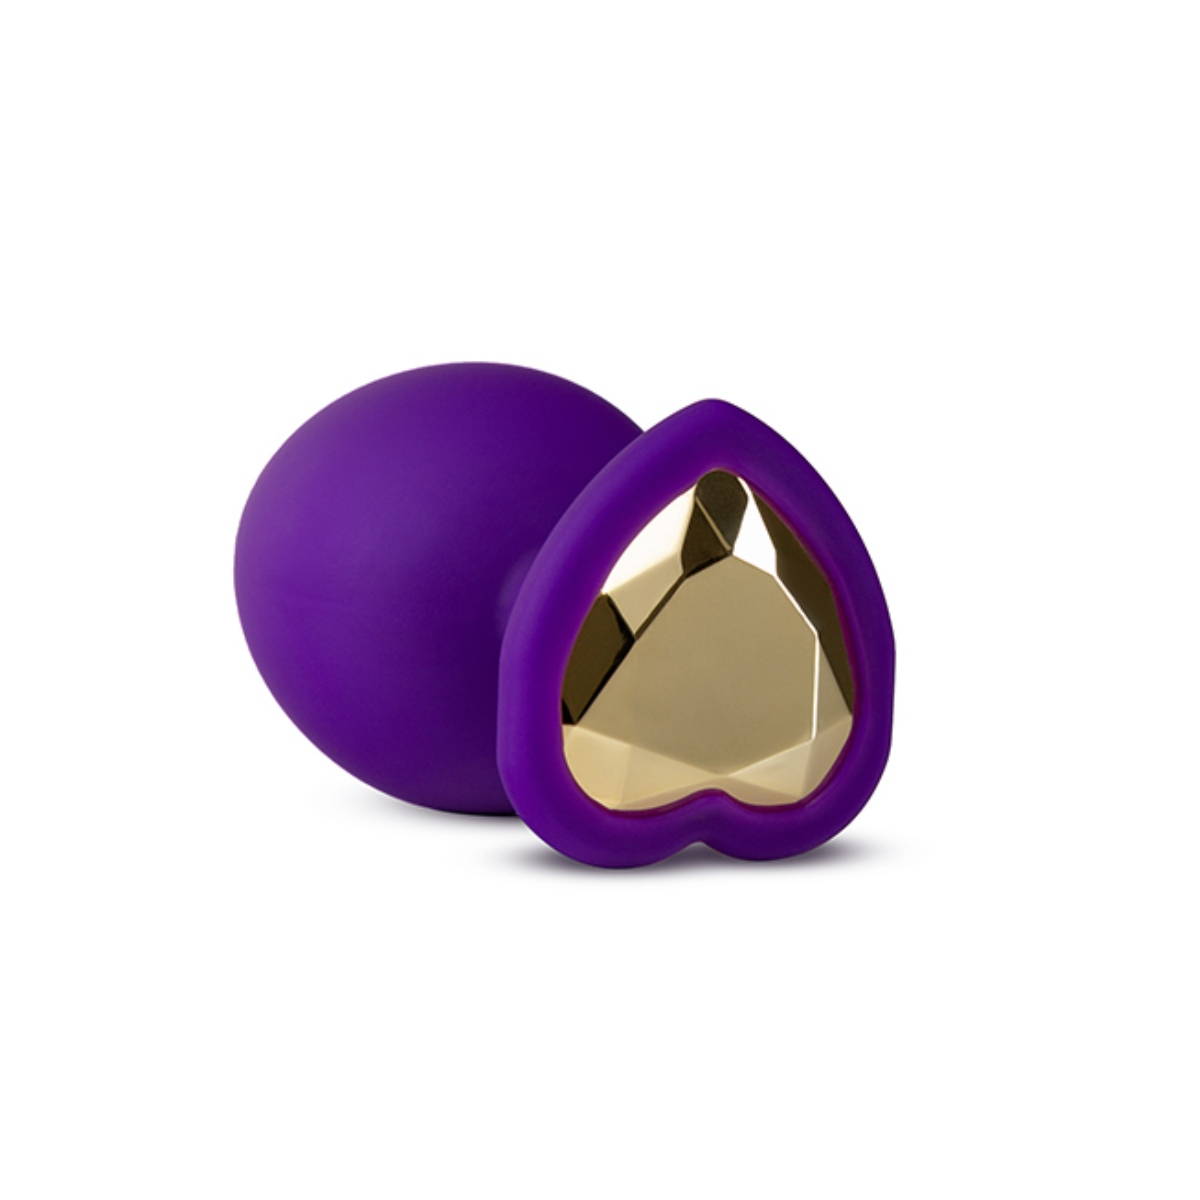 Plug anale viola con cuore dorato Temptasia in silicone Blush (frontale)